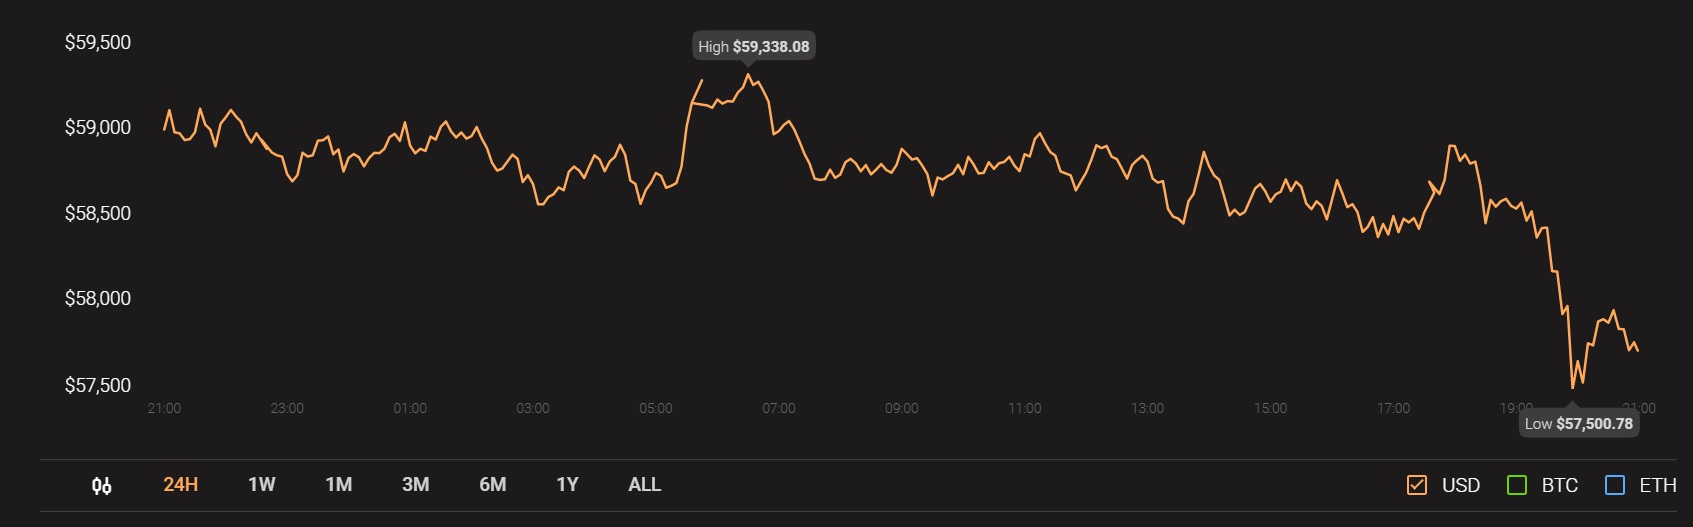 El cofundador de Tether cree que Bitcoin puede subir entre un 300% y un 500%